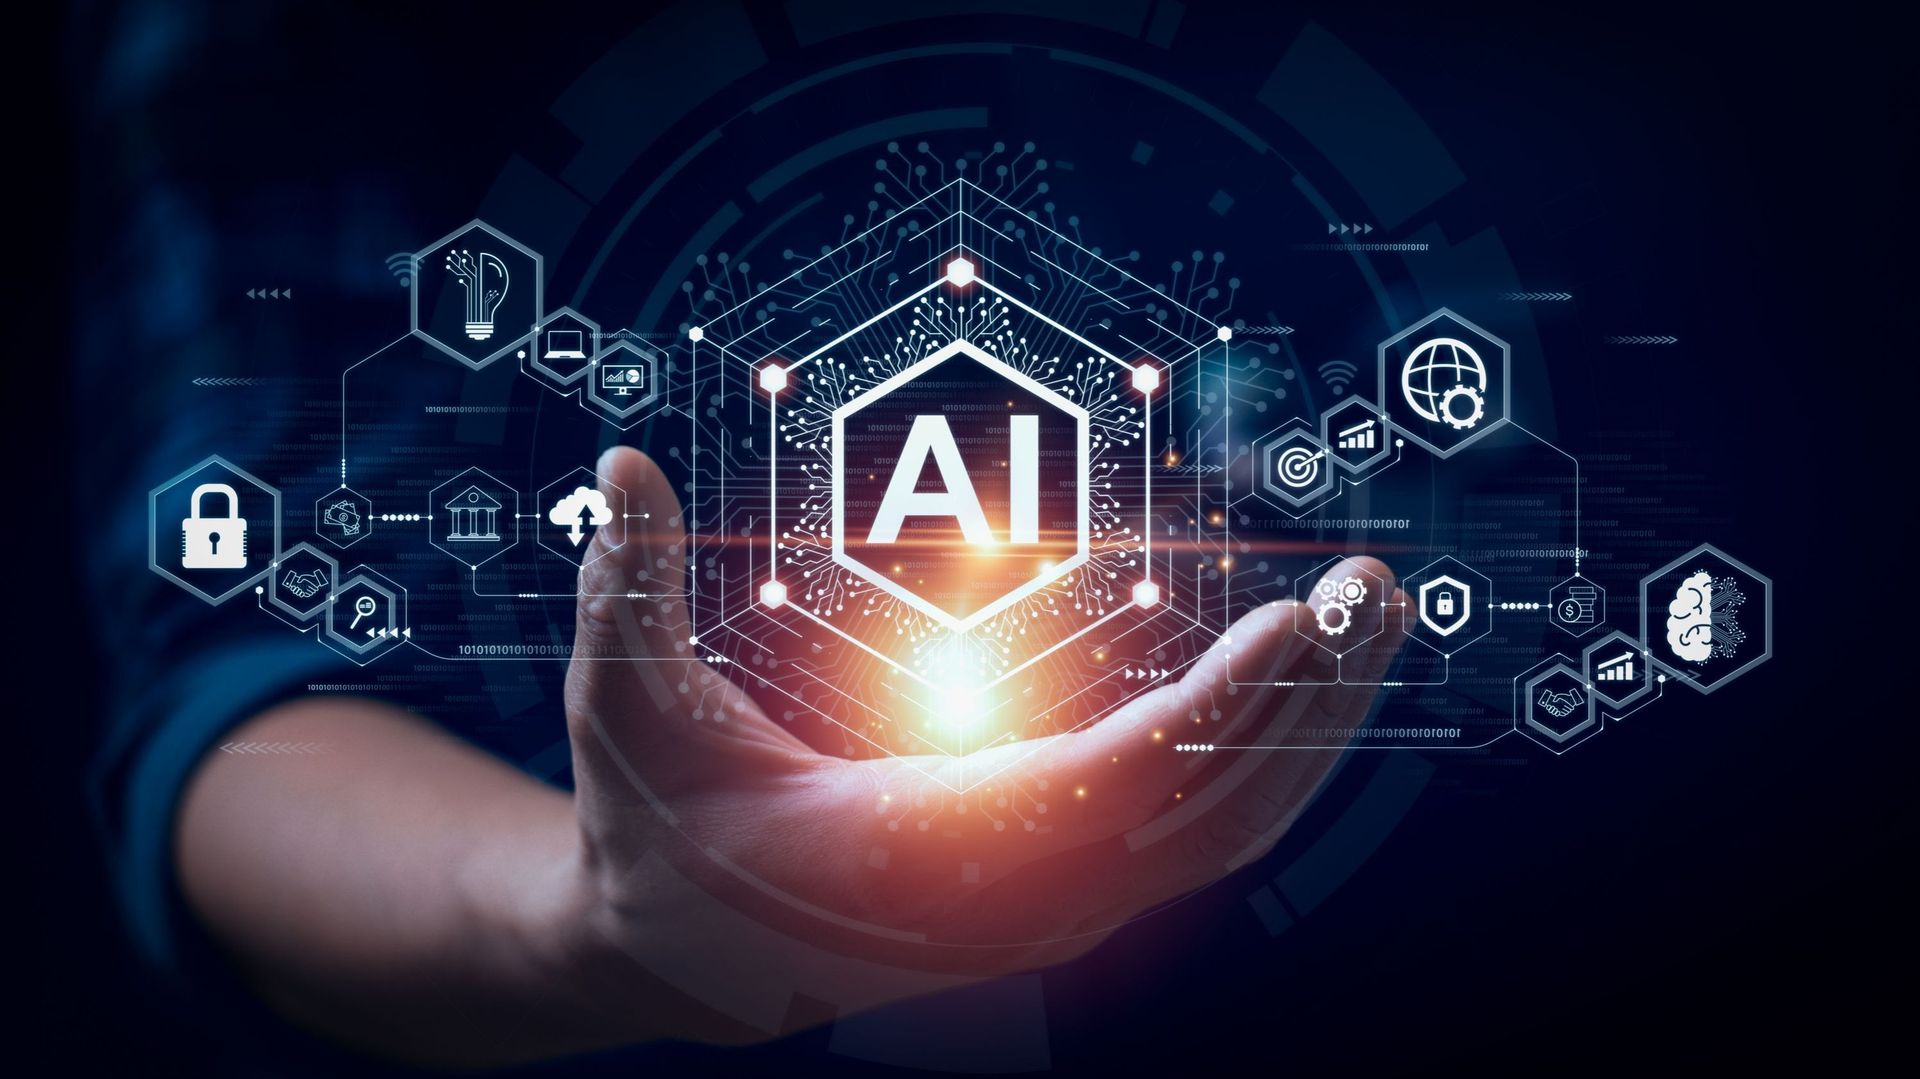 L’IA Act : L’Europe briderait-elle l’innovation technologique avec sa régulation de l’intelligence artificielle ?